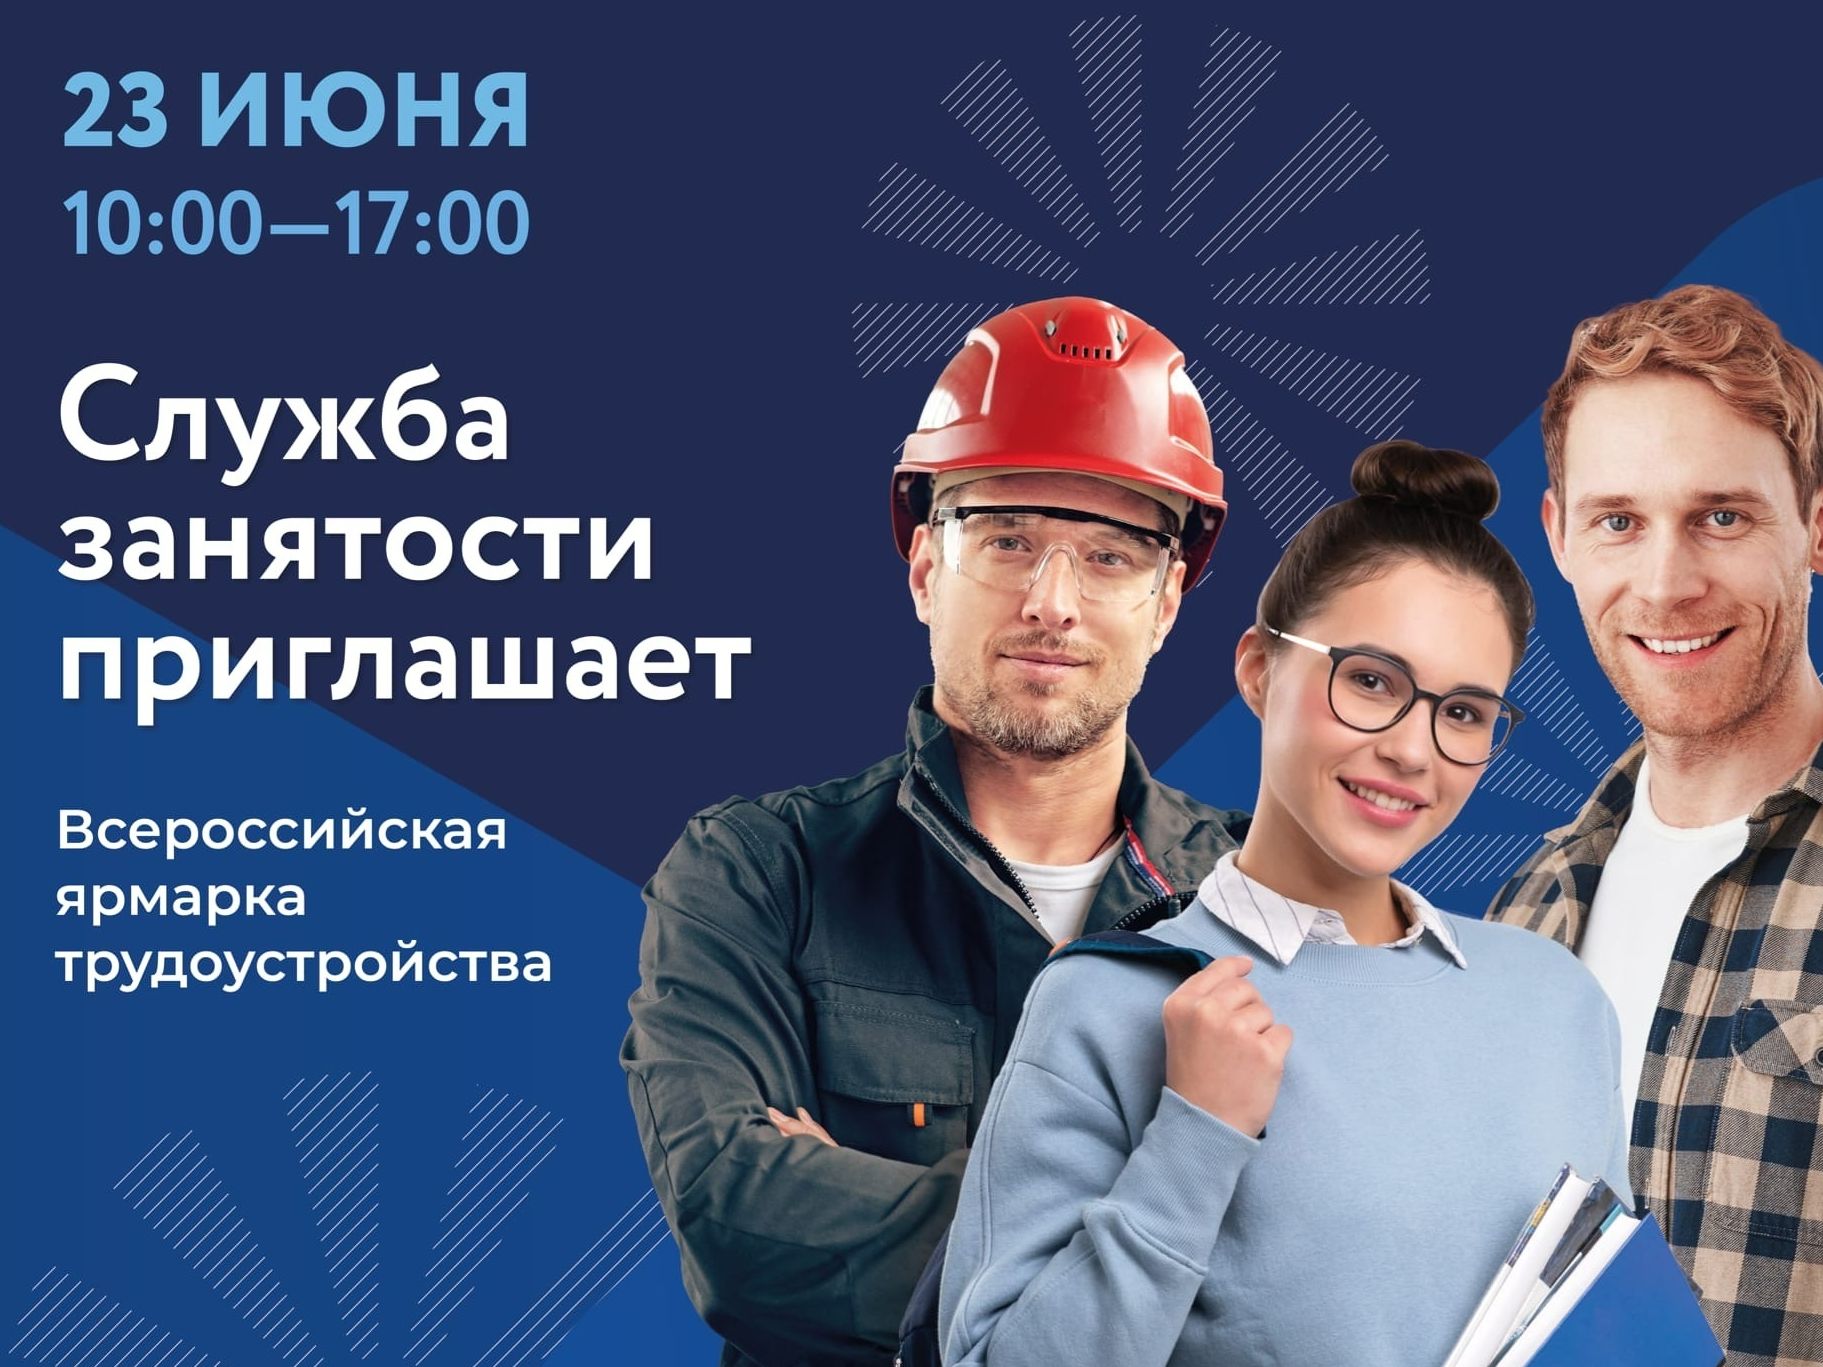 23 июня 2023 года служба занятости населения проведёт Всероссийскую ярмарку трудоустройства в Москве.